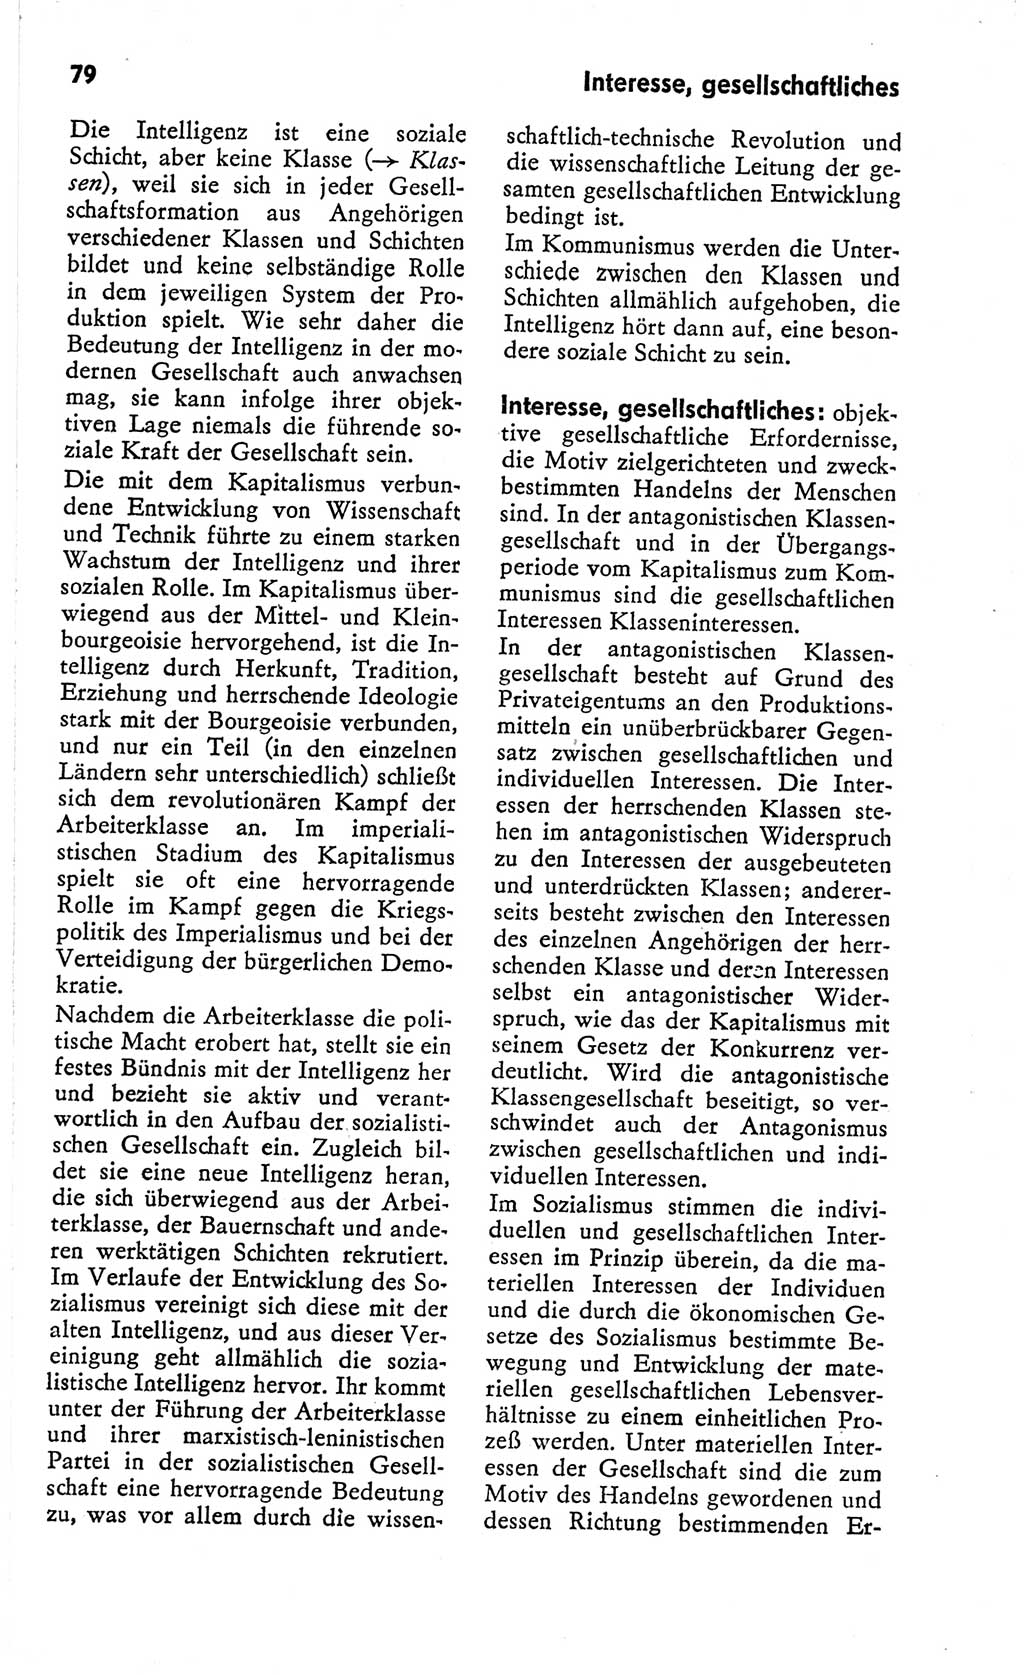 Kleines Wörterbuch der marxistisch-leninistischen Philosophie [Deutsche Demokratische Republik (DDR)] 1966, Seite 79 (Kl. Wb. ML Phil. DDR 1966, S. 79)